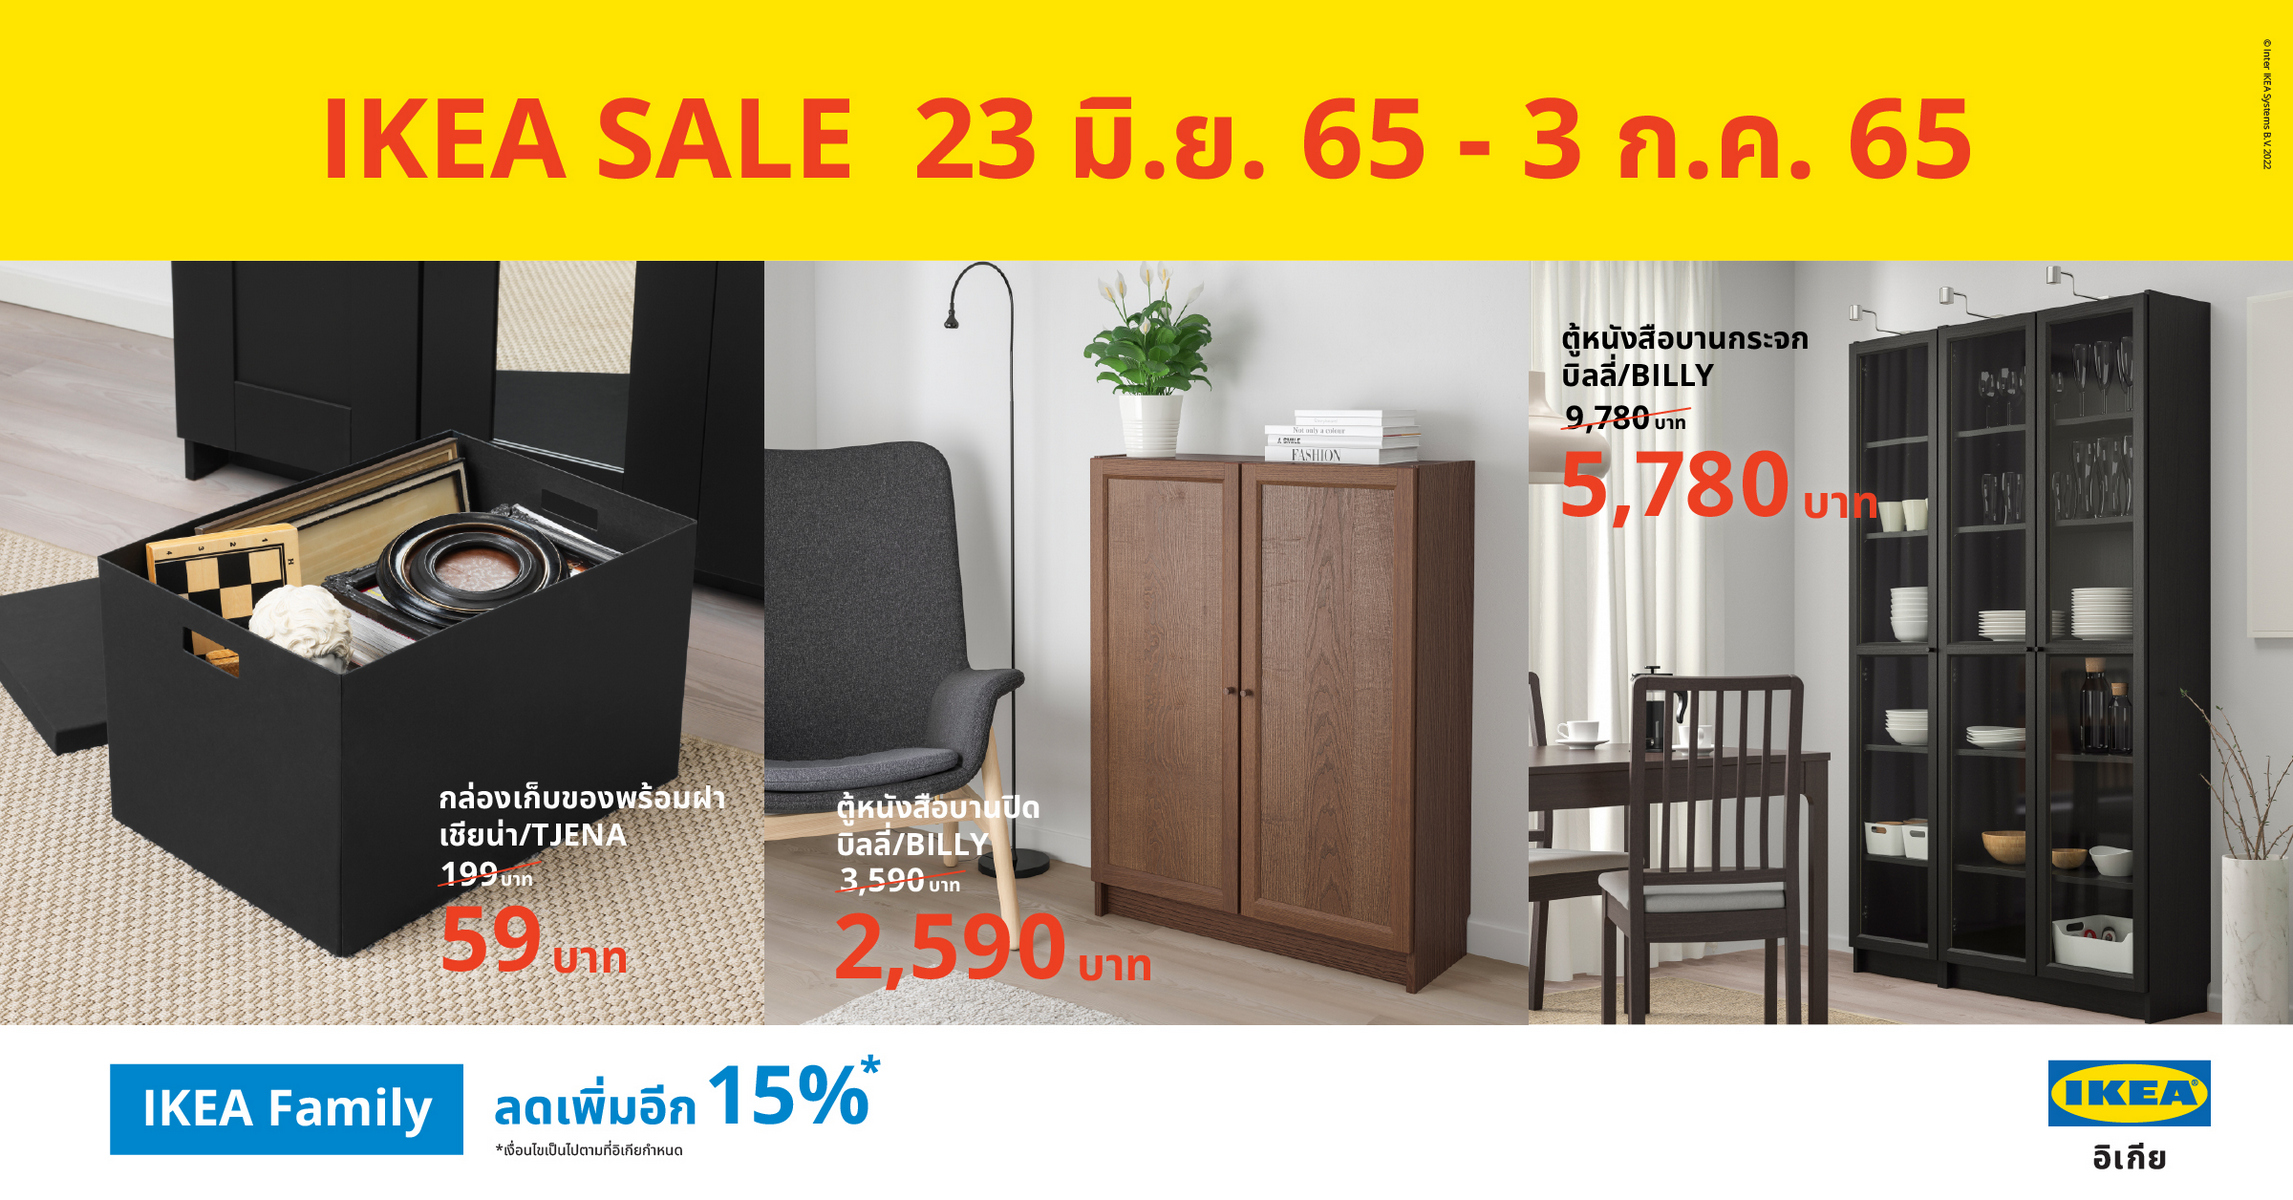 “IKEA SALE” ลดแรงจัดเต็ม เริ่มต้น 9 บาท  พิเศษ IKEA Family ลดเพิ่ม 15% ตั้งแต่ 23 มิ.ย. 65 – 3 ก.ค. 65